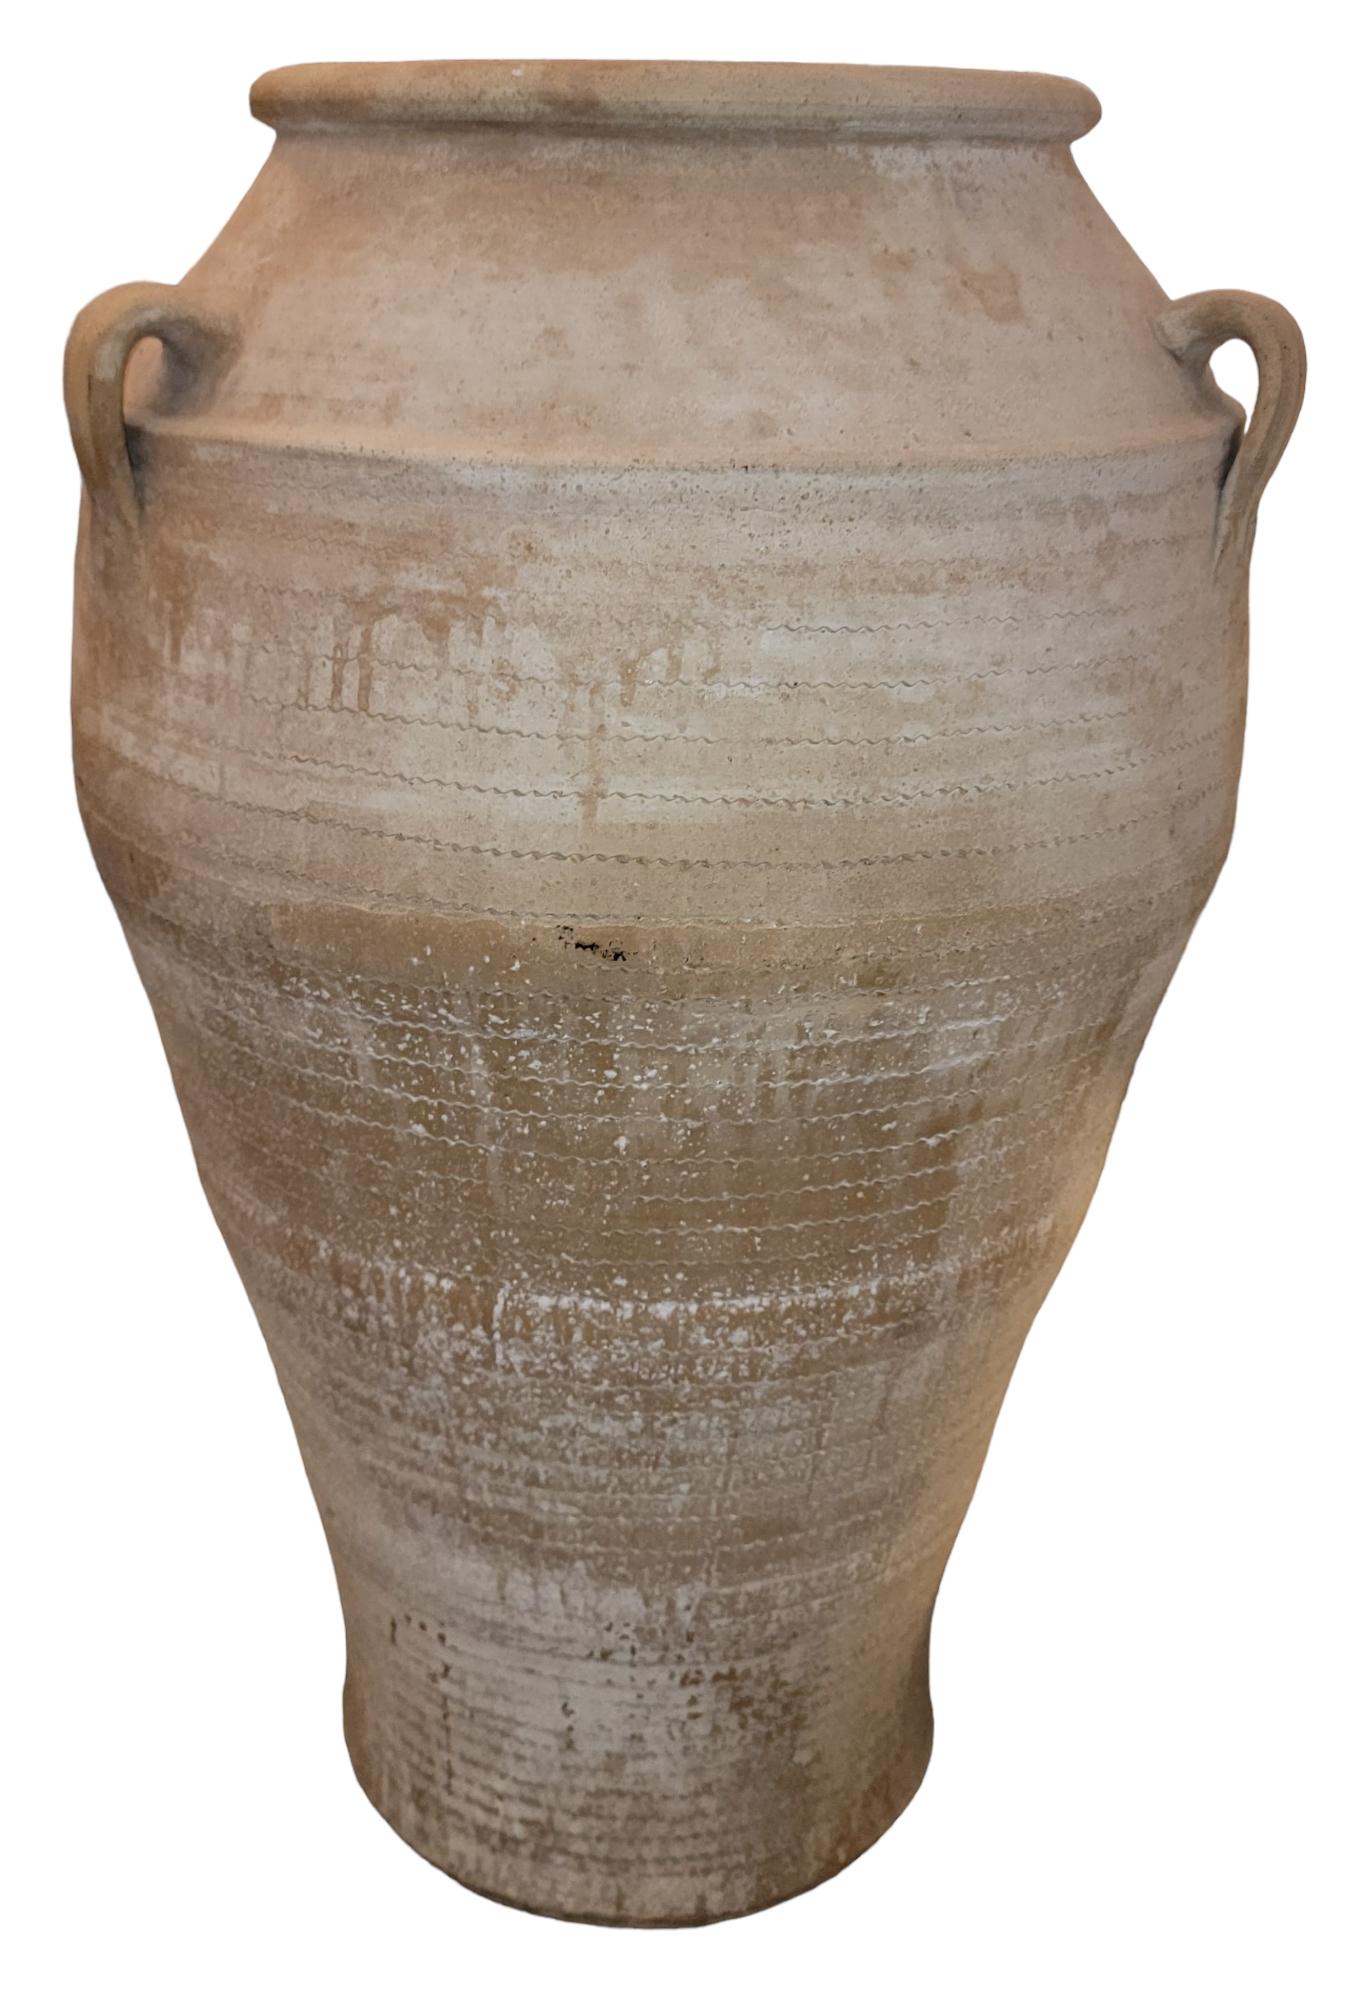 Jarre à olives vintage en poterie grecque avec des poignées et une belle texture au cadre. L'aspect épuré est accentué par les lignes qui font le tour du vase. De superbes poteries faites à la main.

mesure environ - 22 de diamètre x 35,5 de haut.